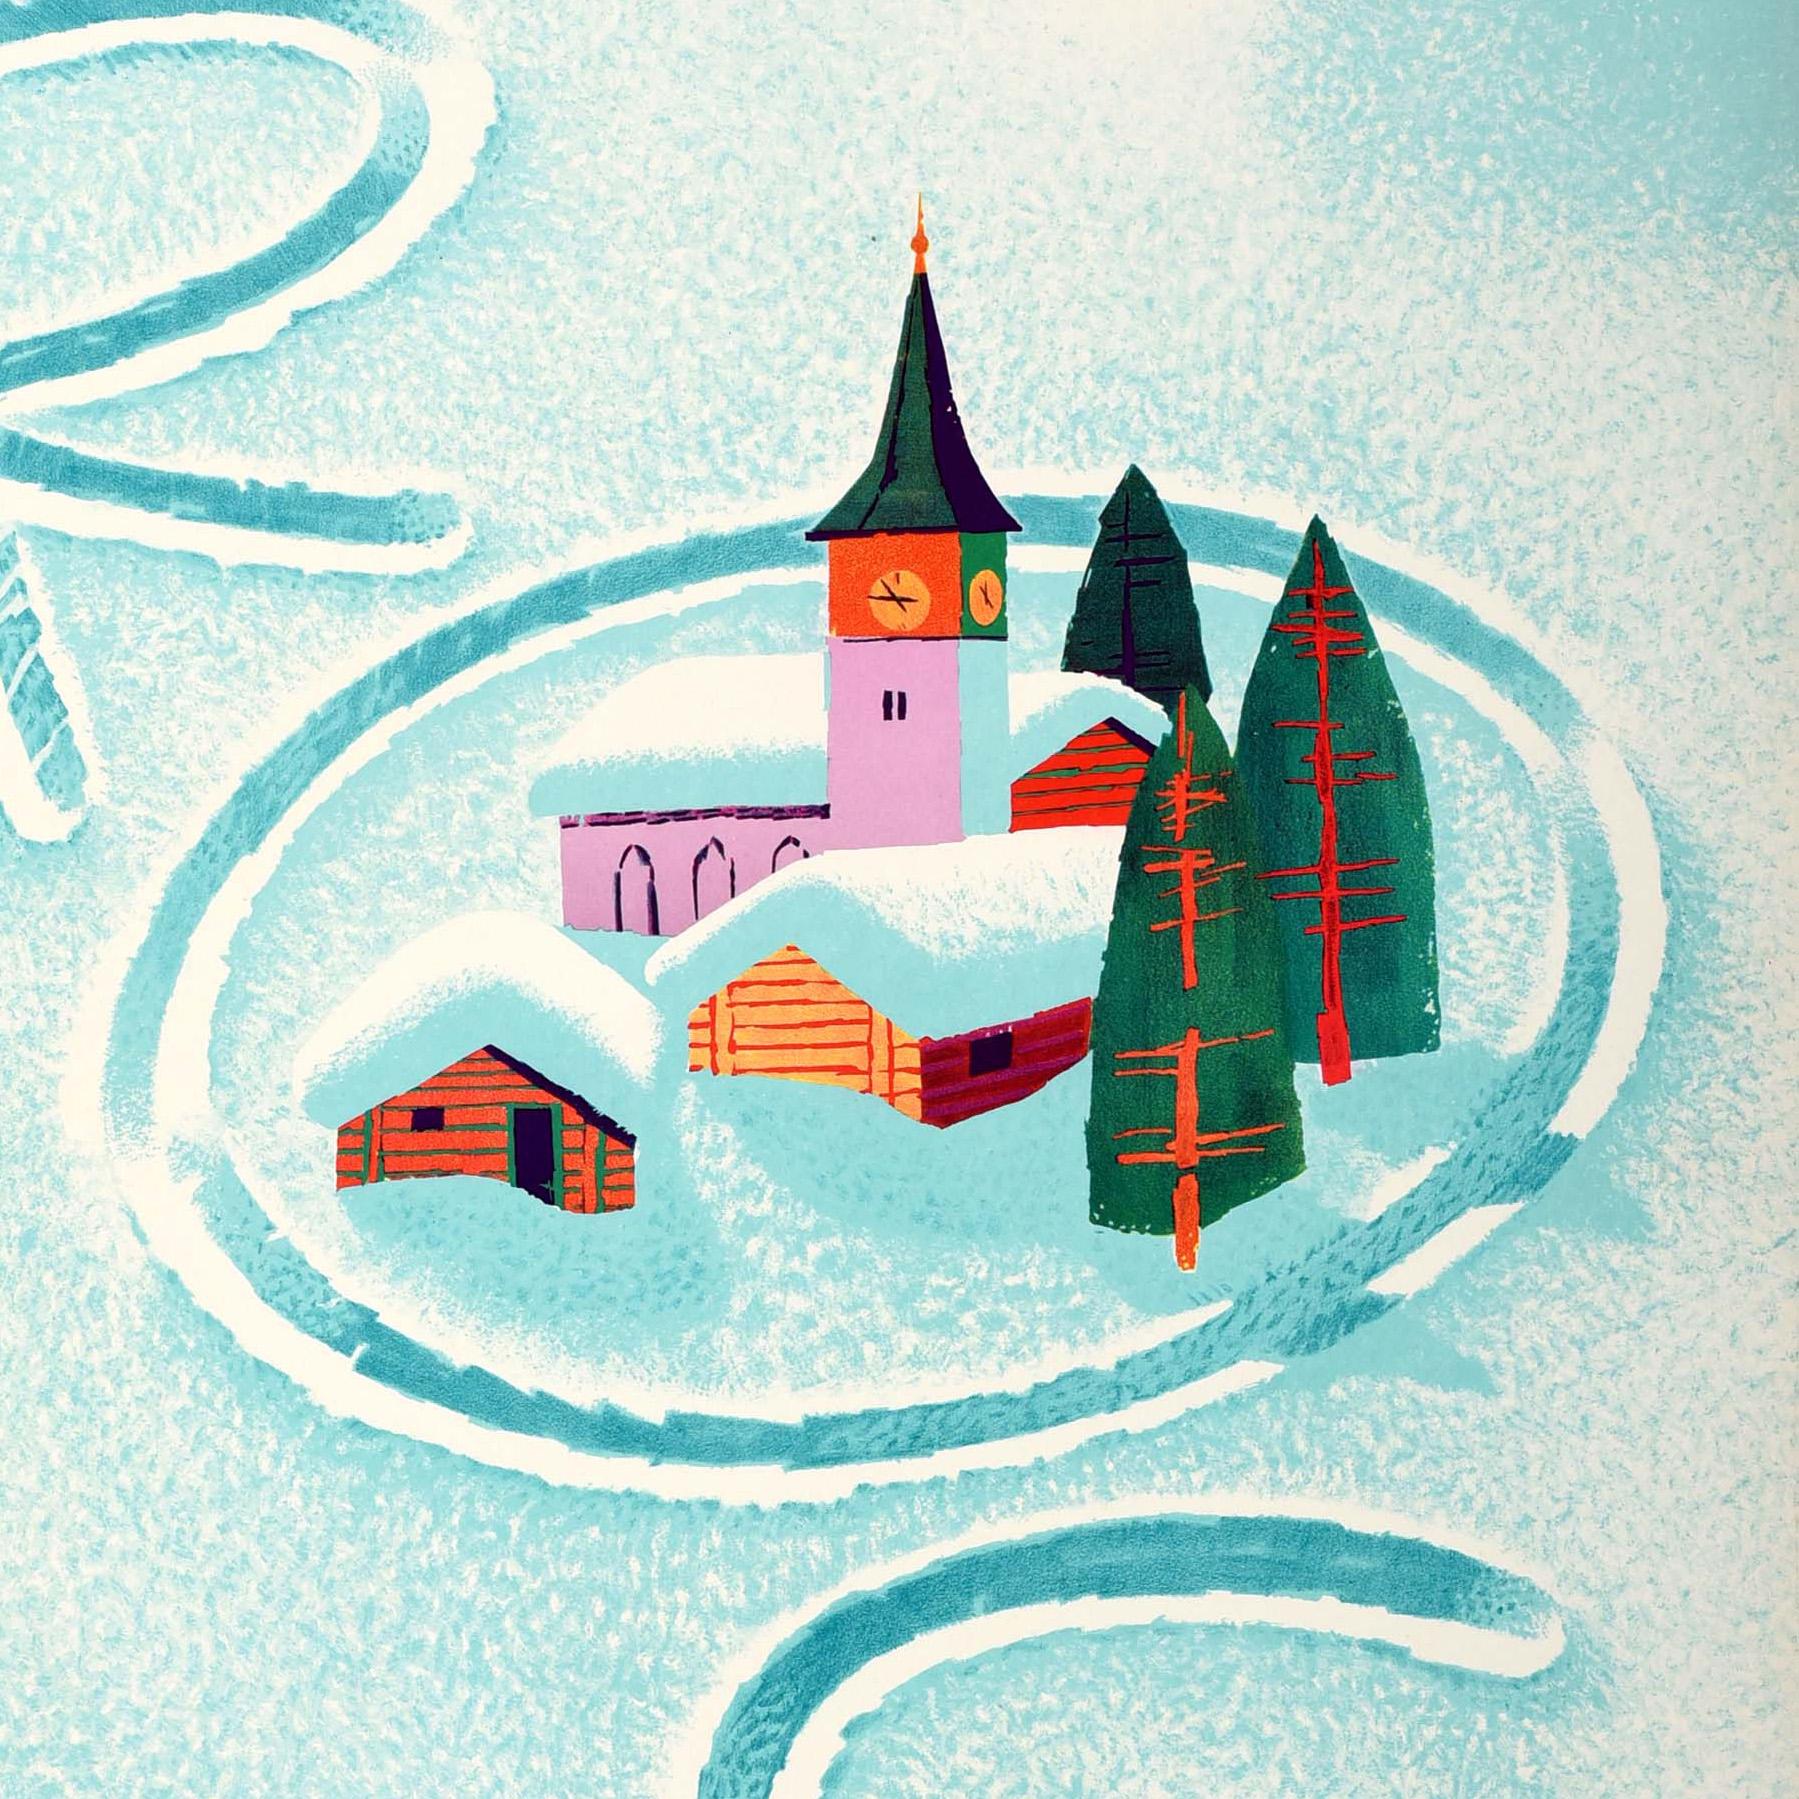 Originales Vintage-Reiseplakat für Arosa Schweiz mit einem lustigen und farbenfrohen Entwurf des bekannten Schweizer Künstlers Donald Brun (1909-1999), der eine modisch gekleidete Skifahrerin mit grünem Kopftuch und rotem Oberteil am Fuße einer